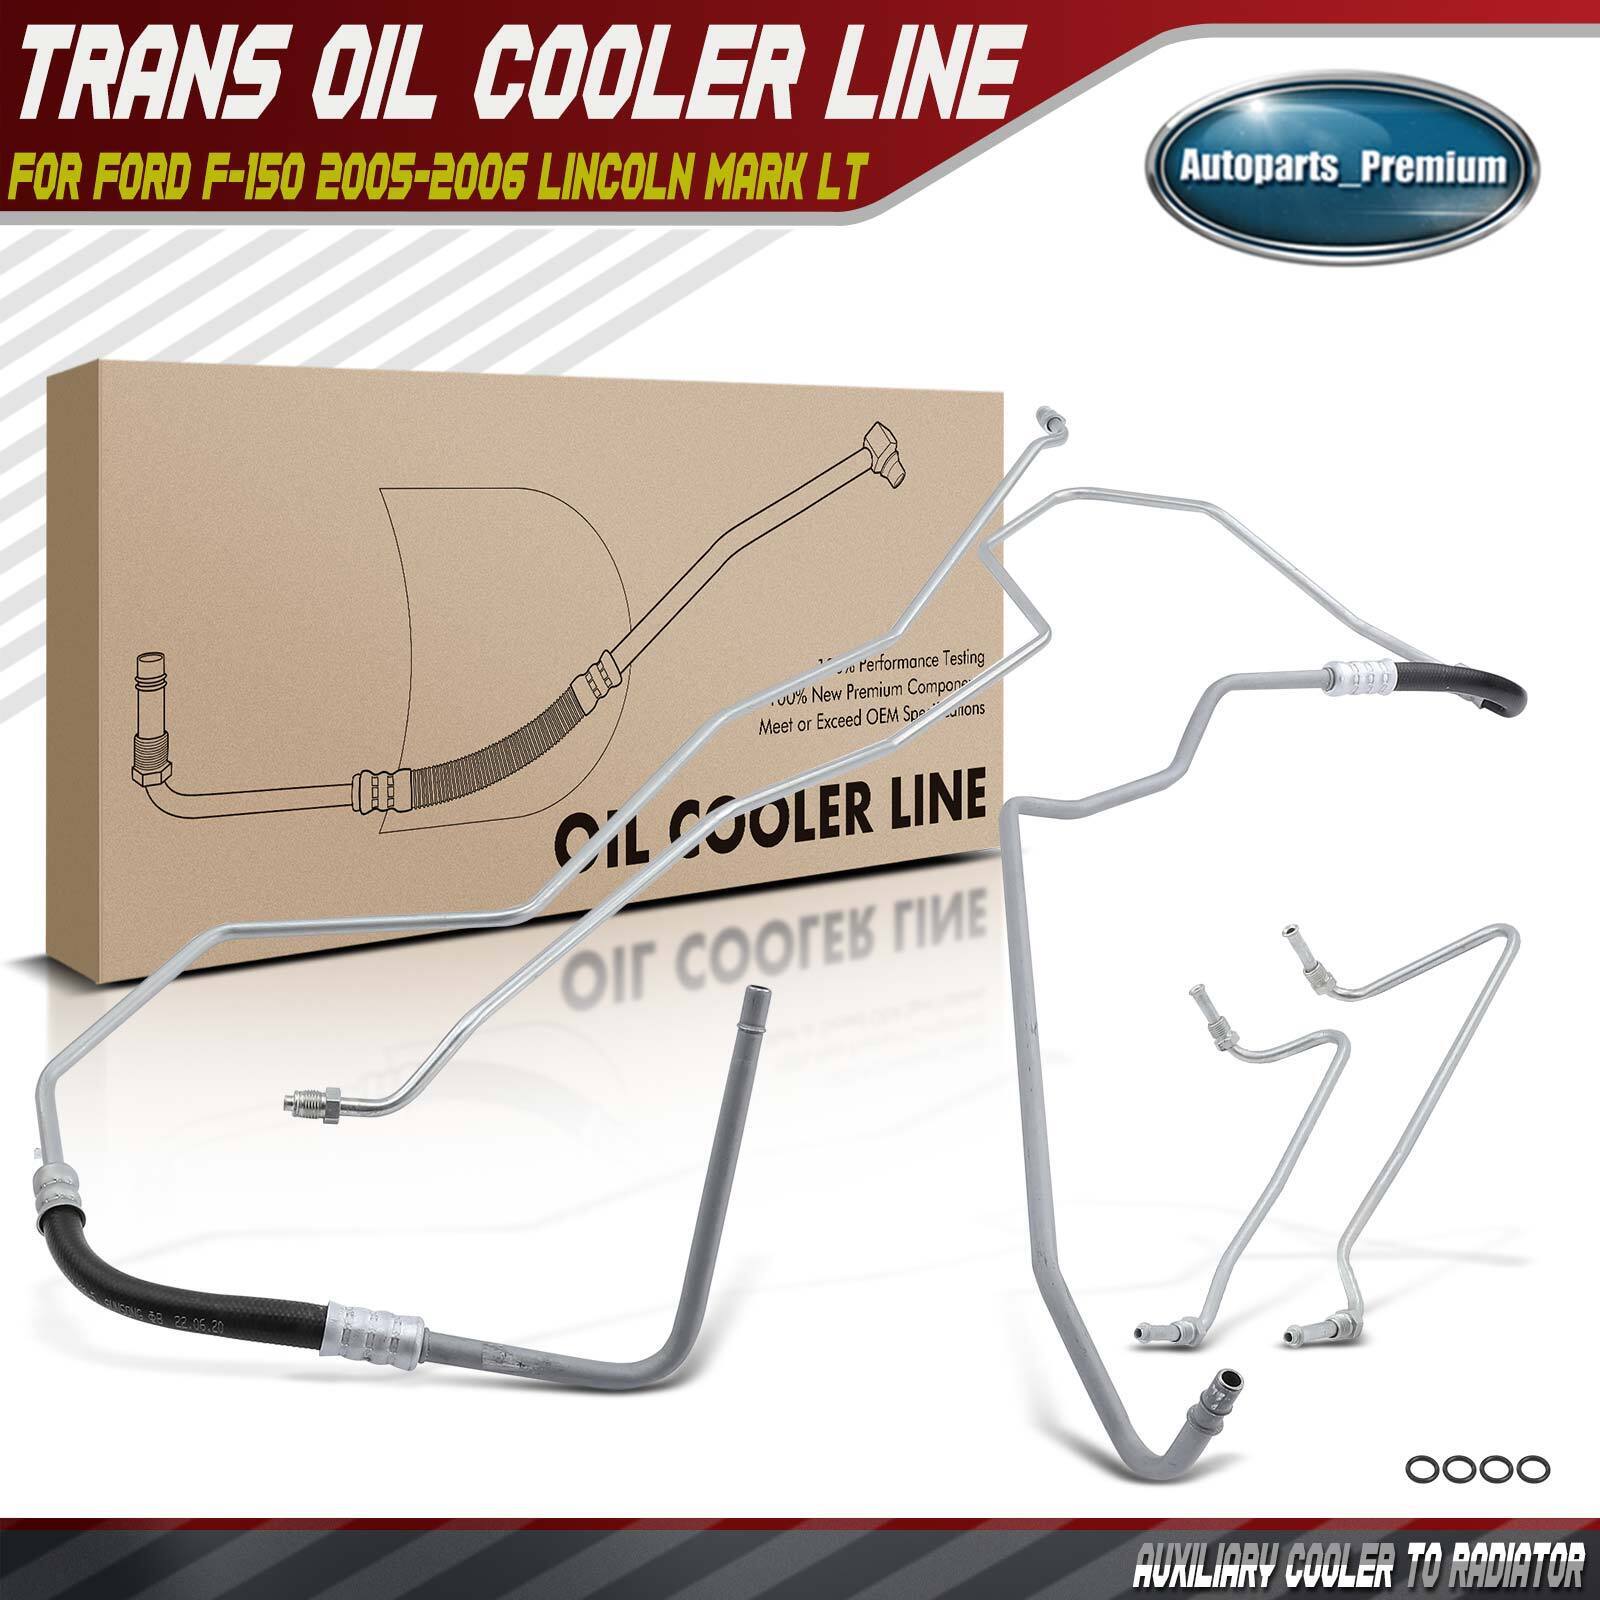 Transmission Oil Cooler Line for Ford F-150 Lincoln Mark LT Cooler to Radiator